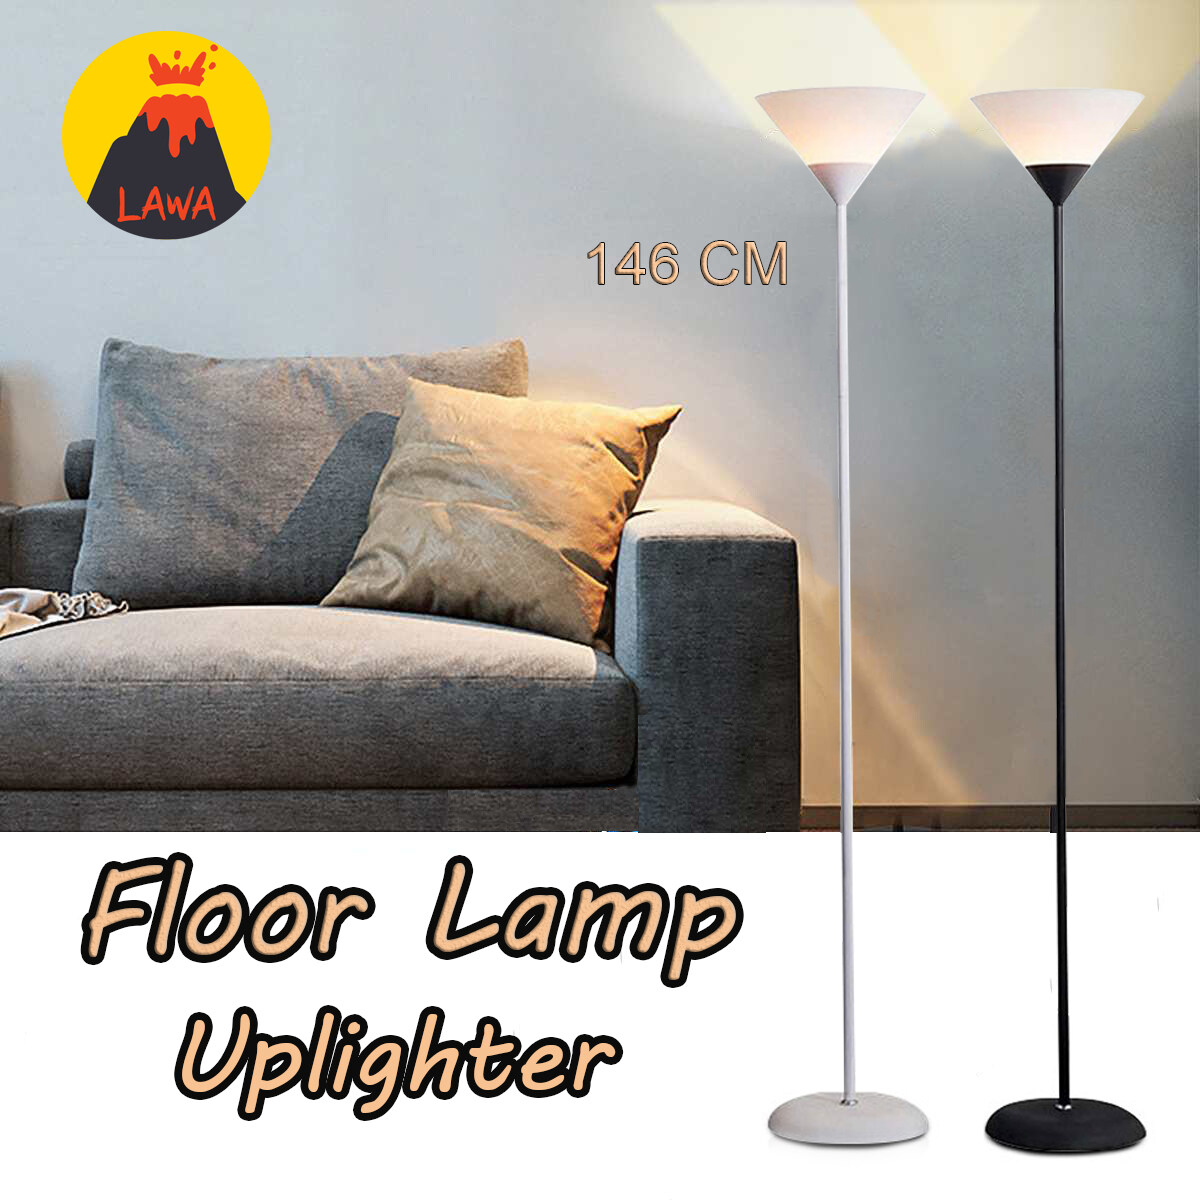 โคมไฟตั้งพื้น โคมไฟ LED สไตล์โมเดิร์น Floor lamp uplighter สูง 146 cm วัสดุทำจากเหล็กและ ABS อย่างดี มี 2 สี ดำ ขาว Floor lamp E27 Lawa